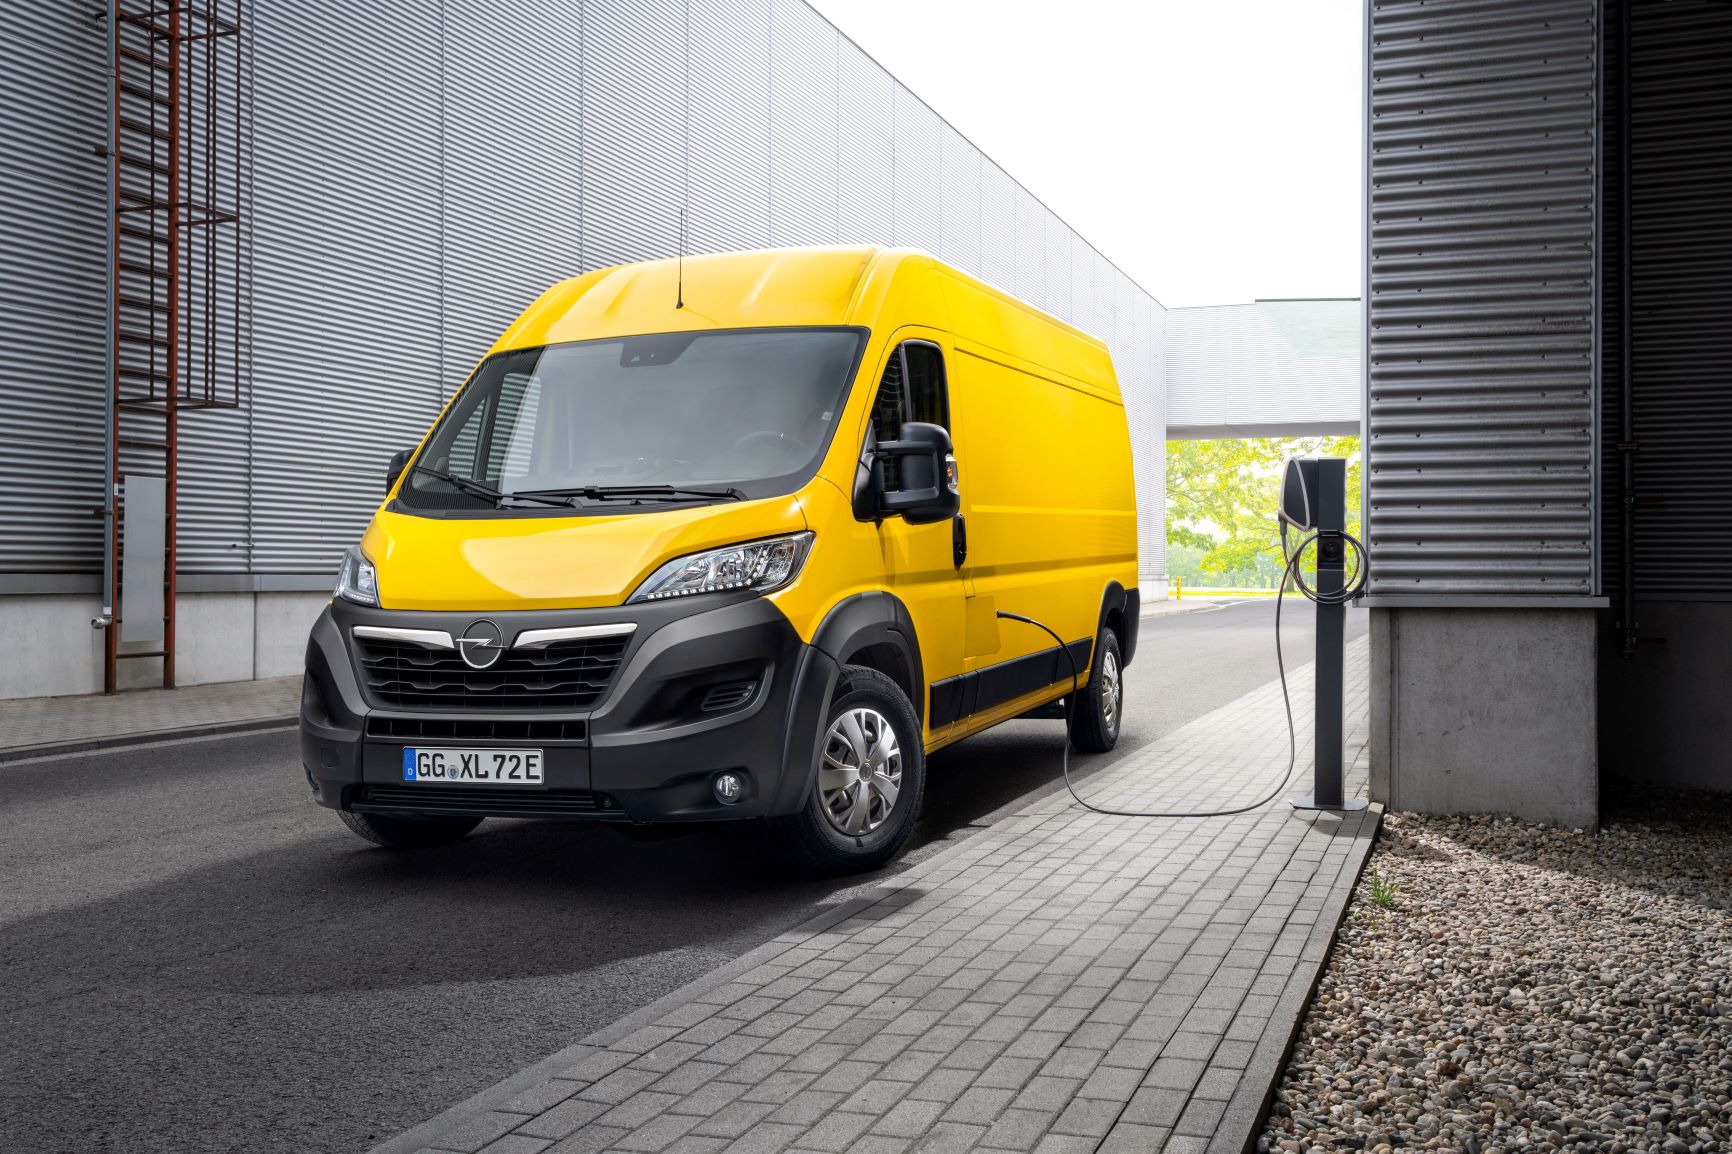 Opel e EDP em parceria para promover mobilidade elétrica 18